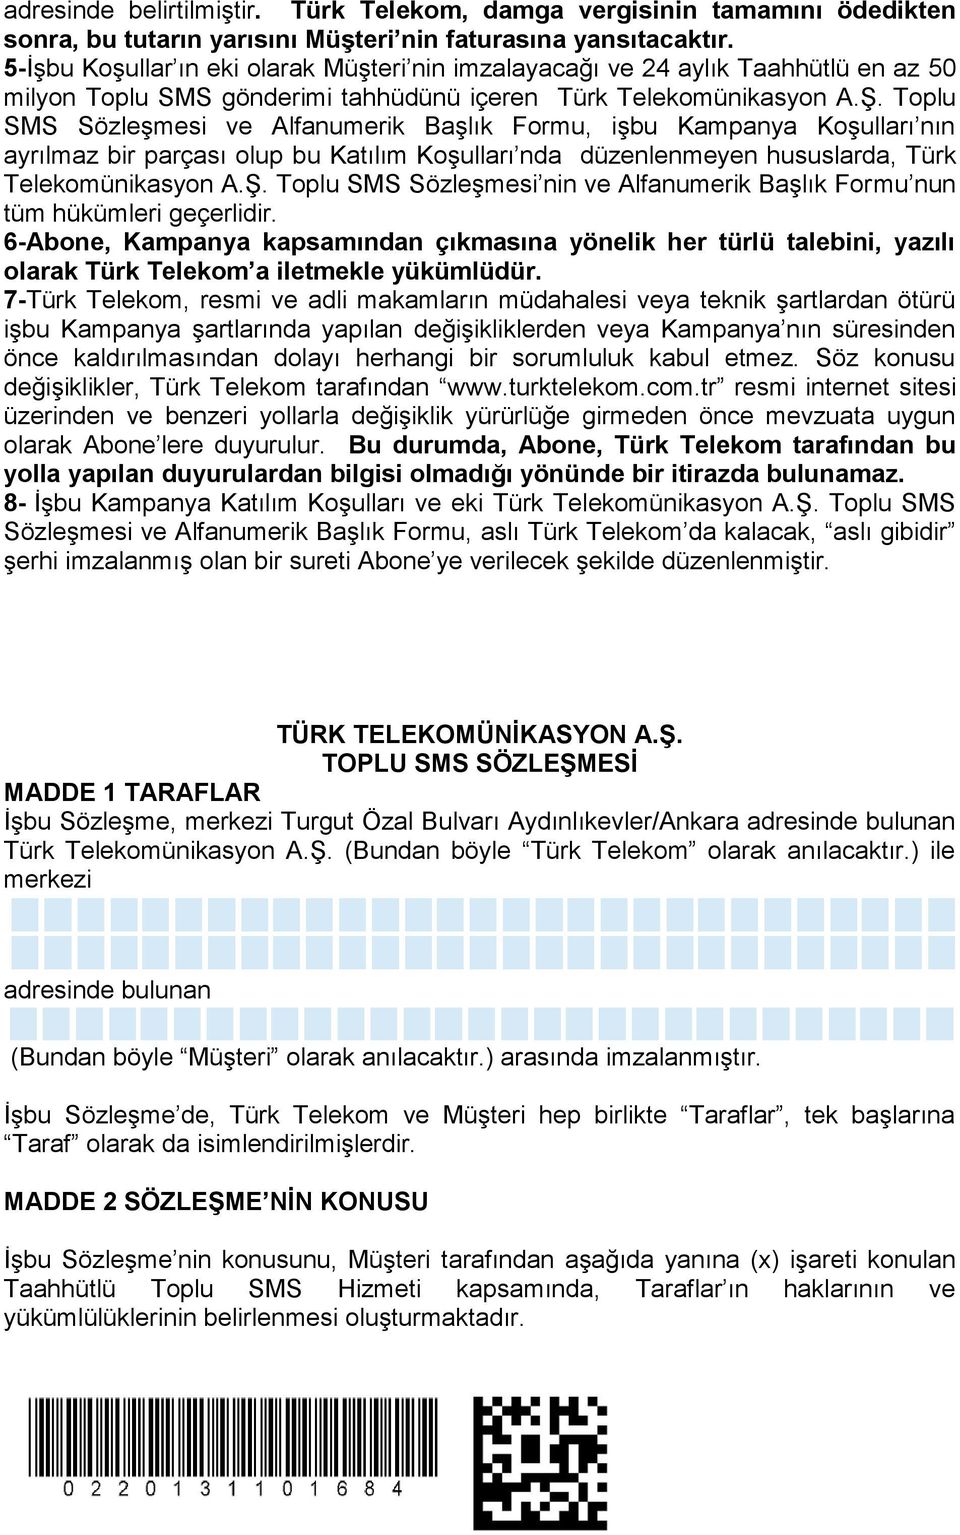 Toplu SMS Sözleşmesi ve Alfanumerik Başlık Formu, işbu Kampanya Koşulları nın ayrılmaz bir parçası olup bu Katılım Koşulları nda düzenlenmeyen hususlarda, Türk Telekomünikasyon A.Ş.